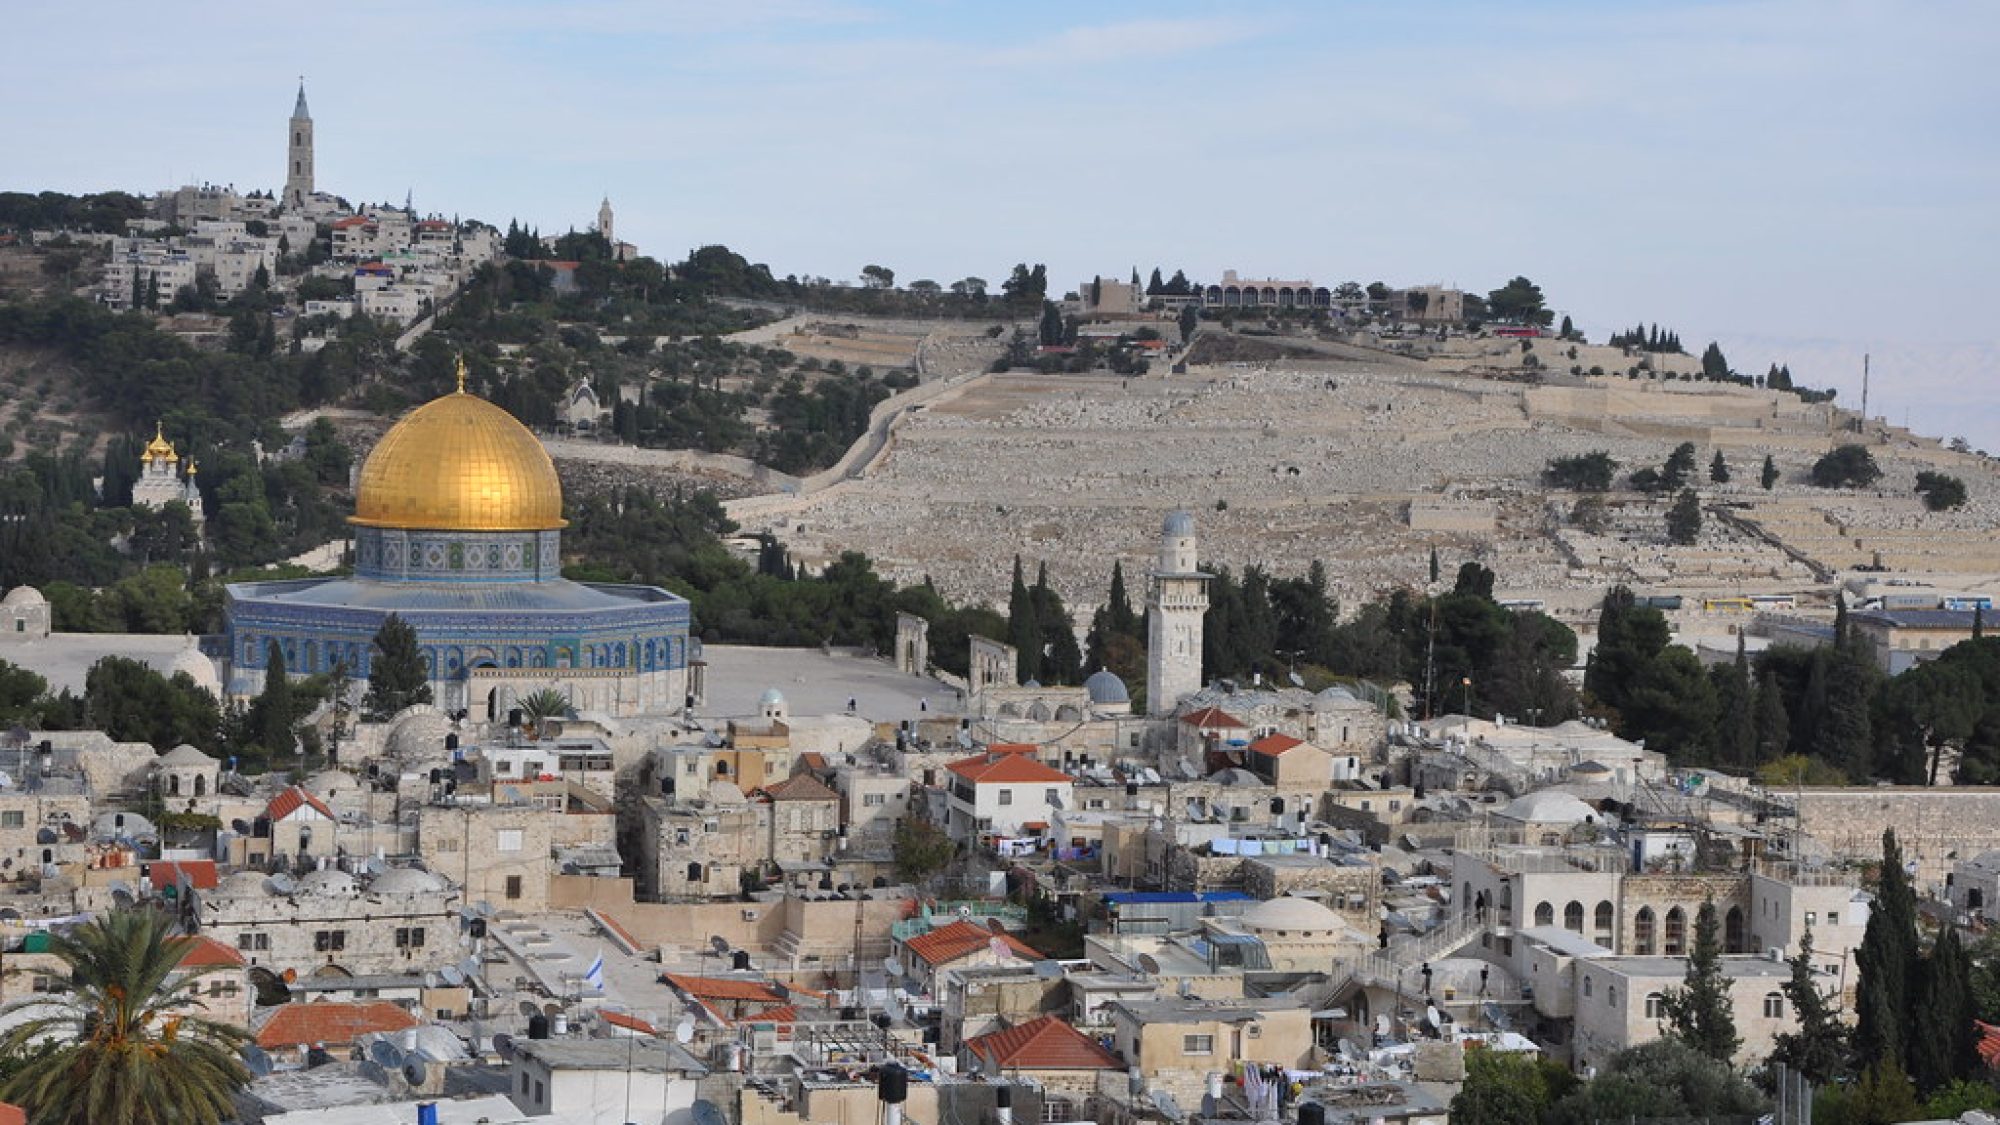 cityscape of Jerusalem